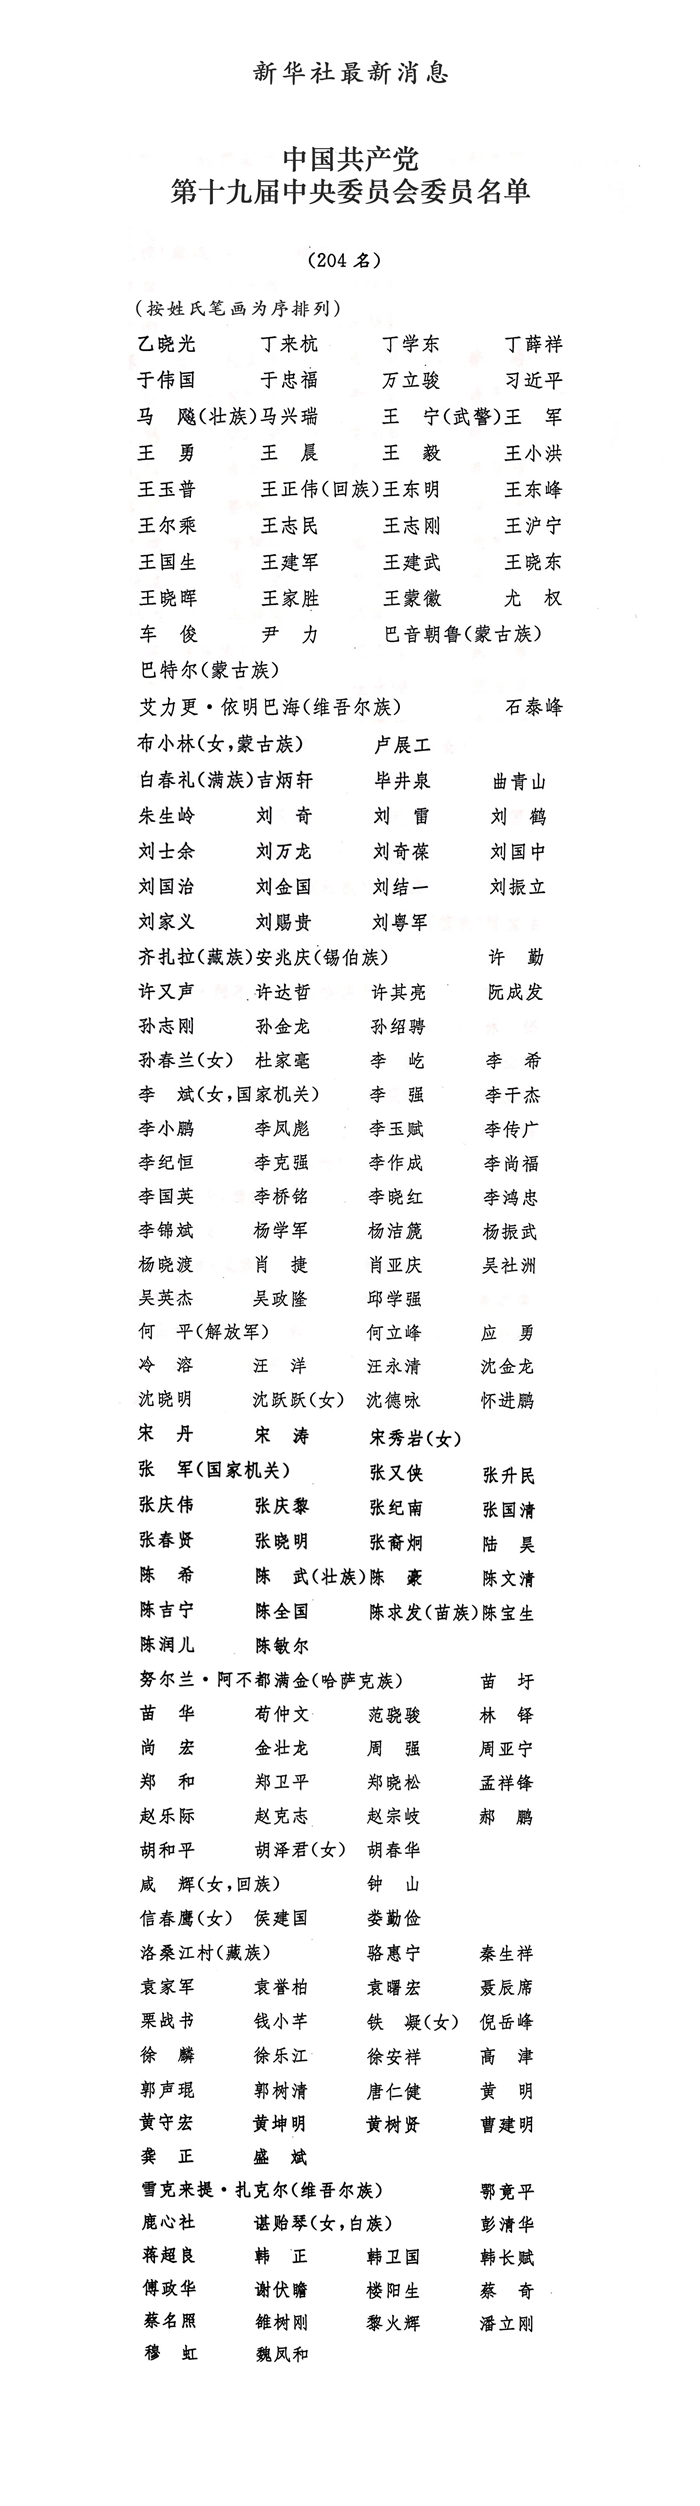 中央委员名单2019人数